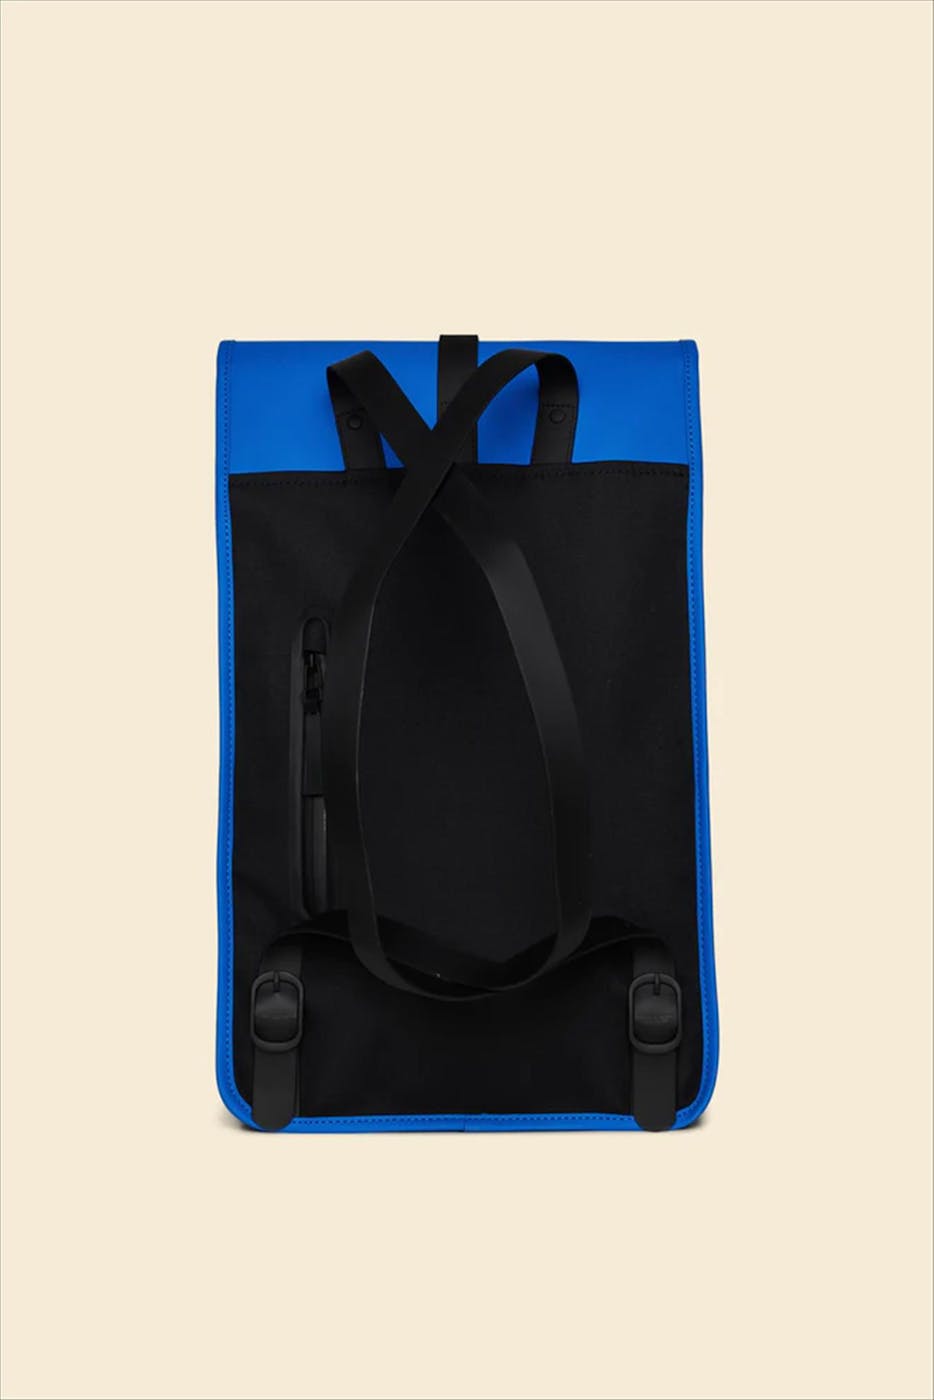 RAINS - Blauwe Backpack rugzak